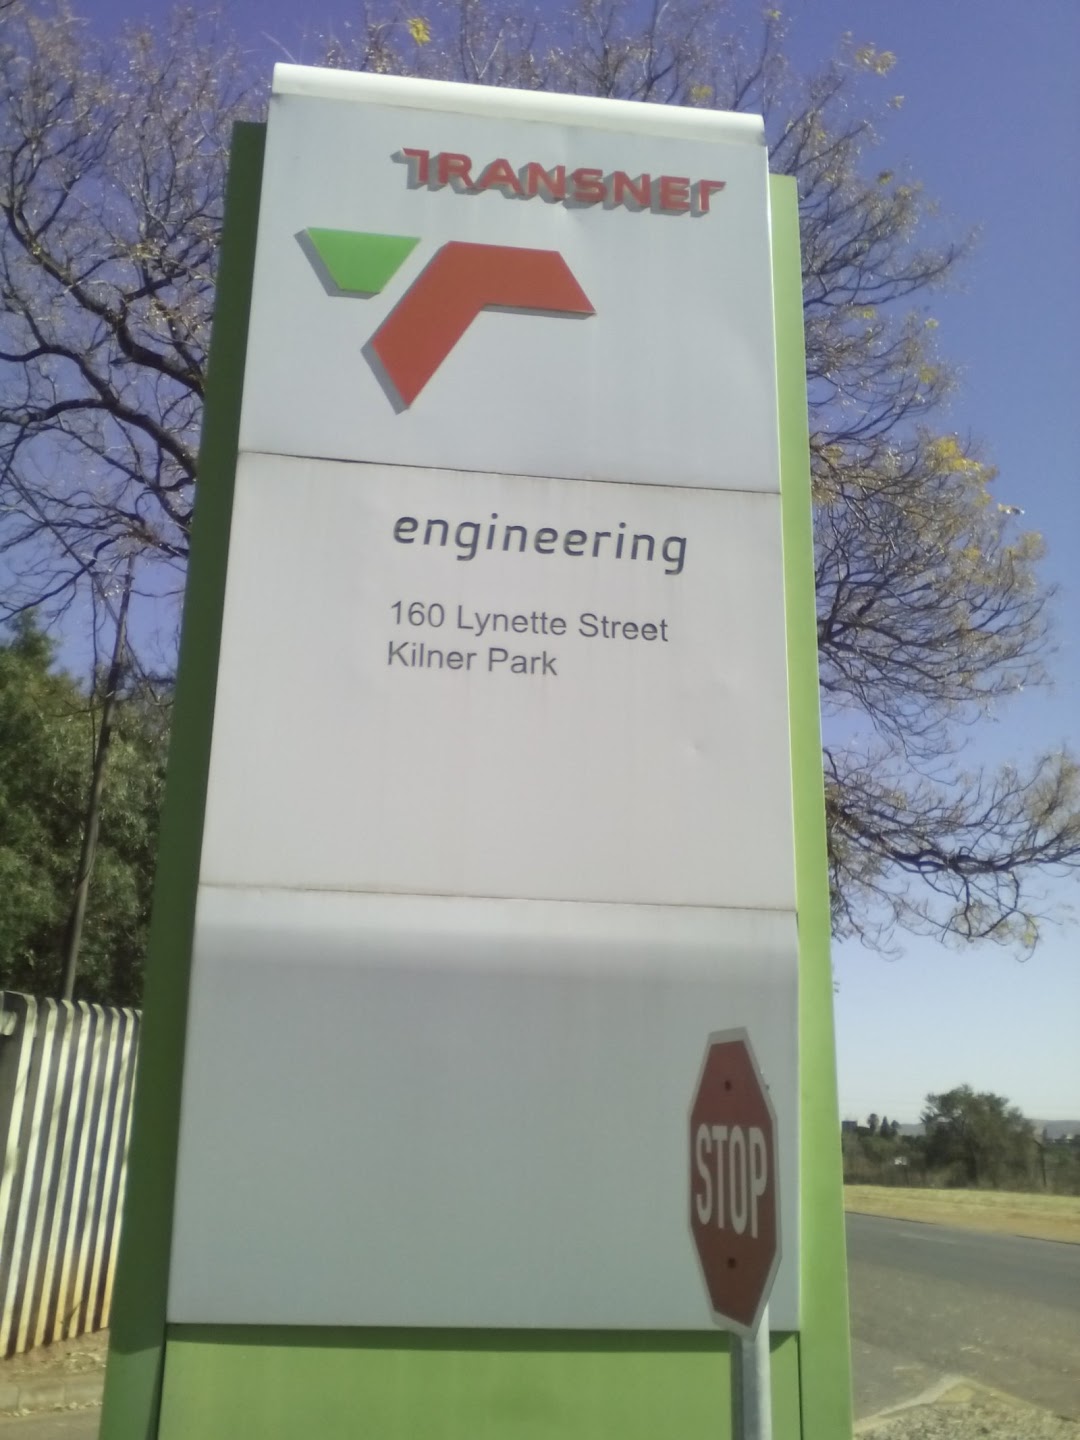 Transnet Engineering - Kilner Park